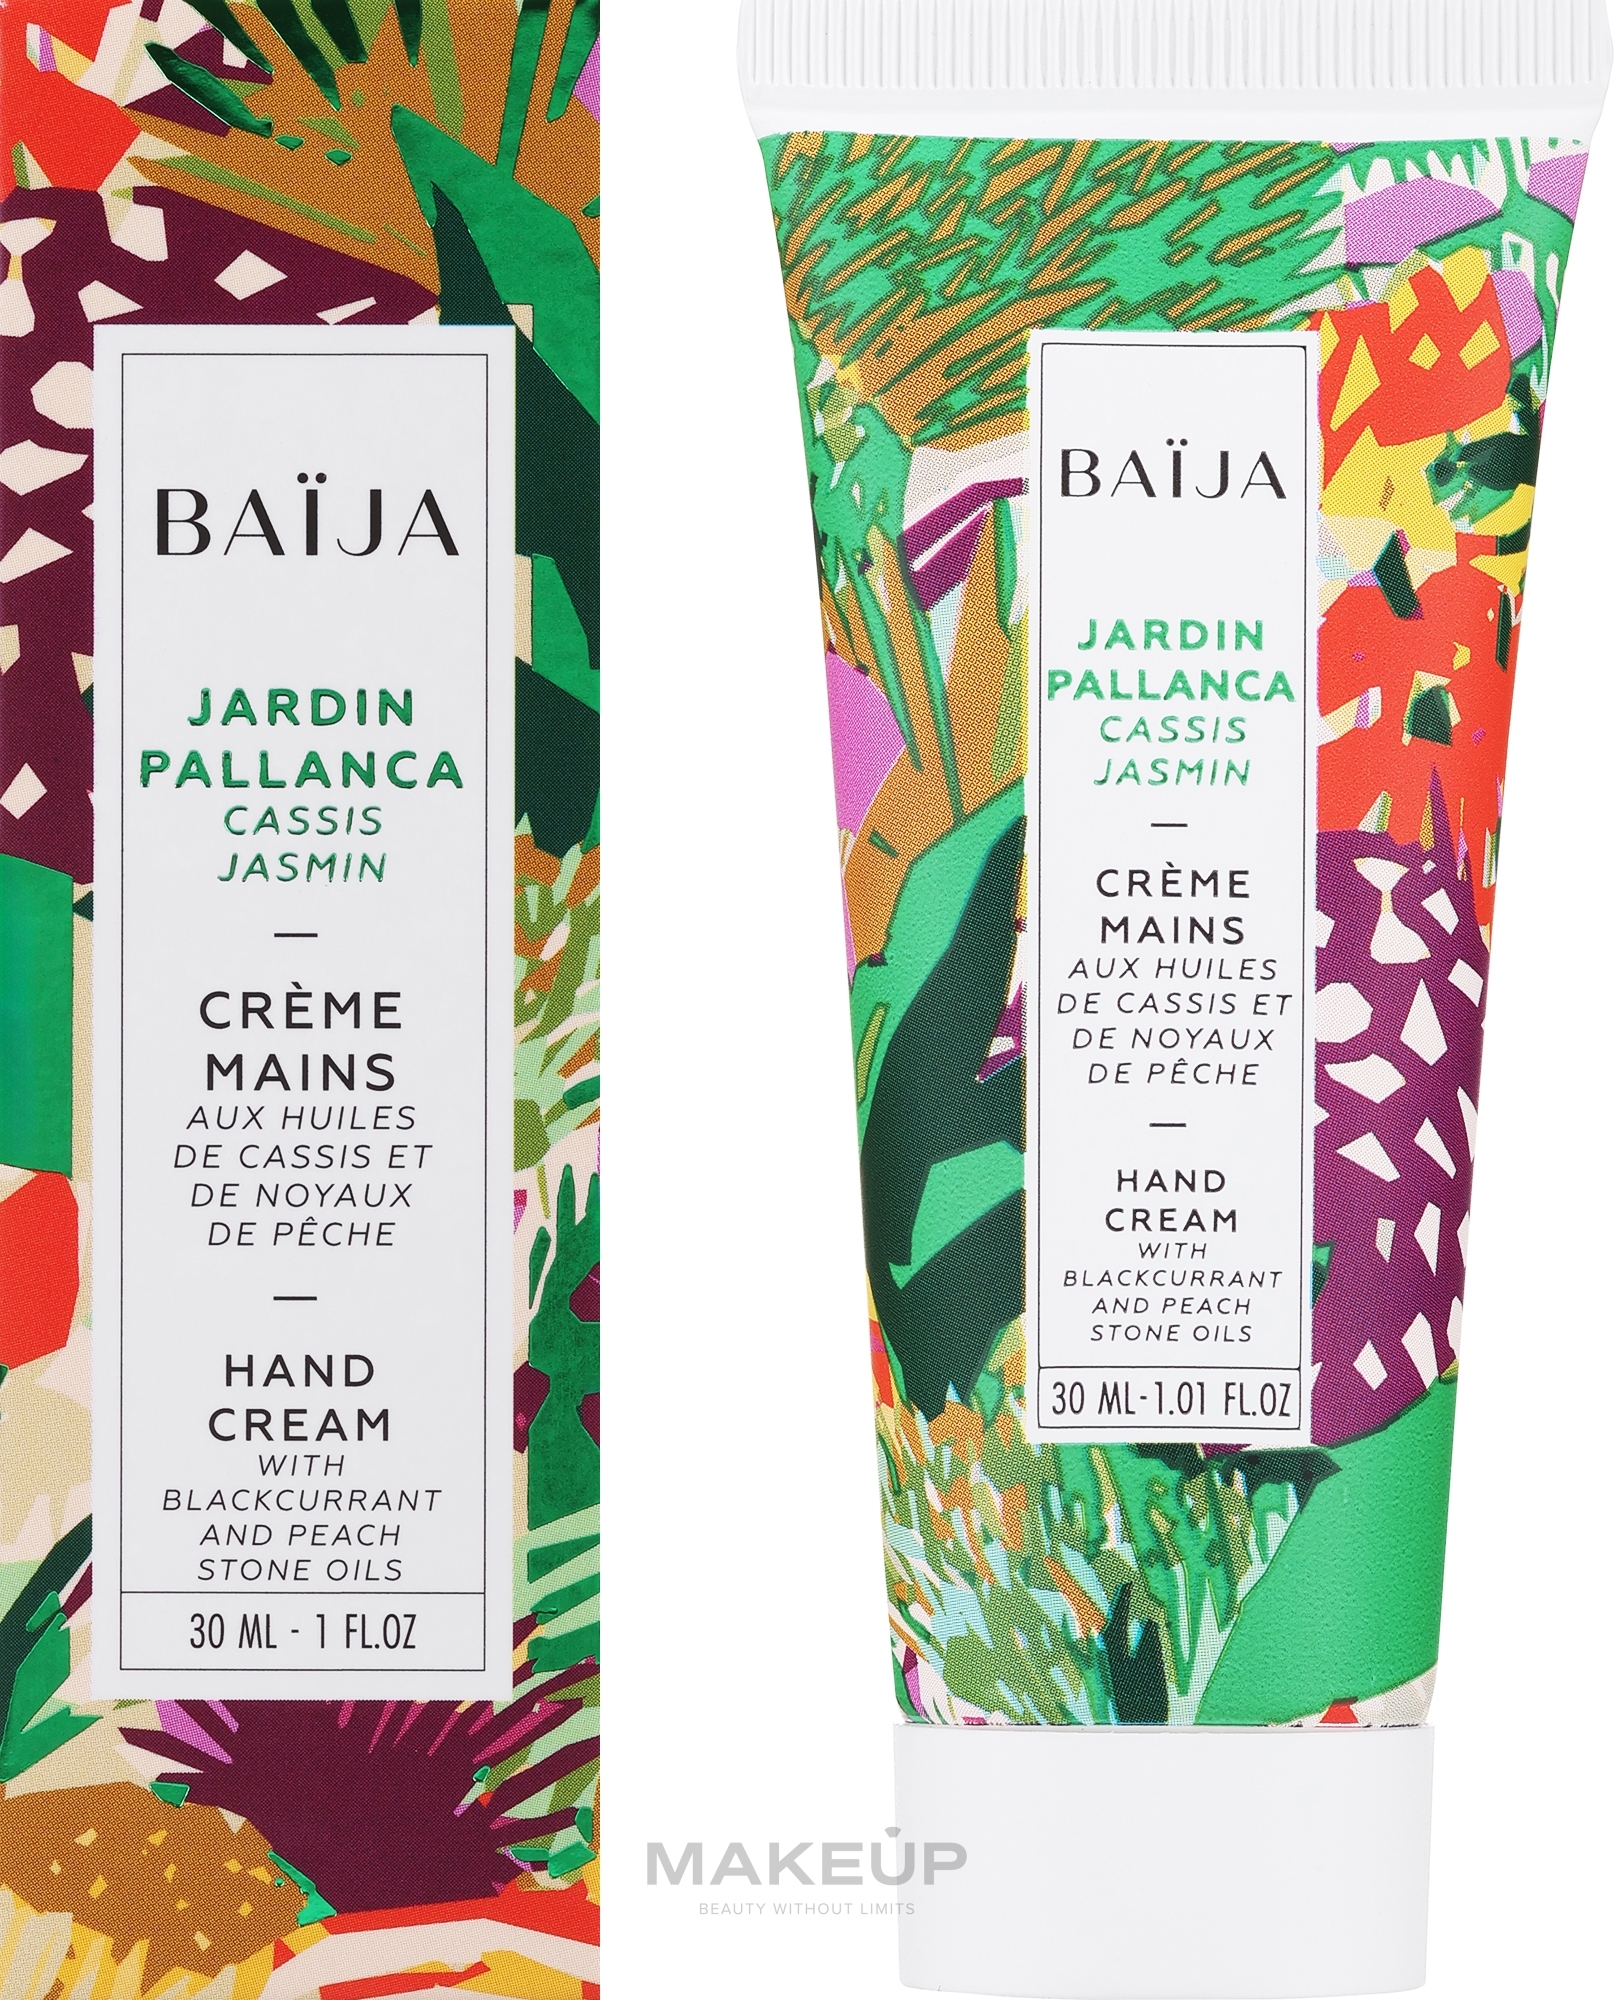 Hand & Nail Cream - Baija Jardin Pallanca Hand Cream — photo 30 ml